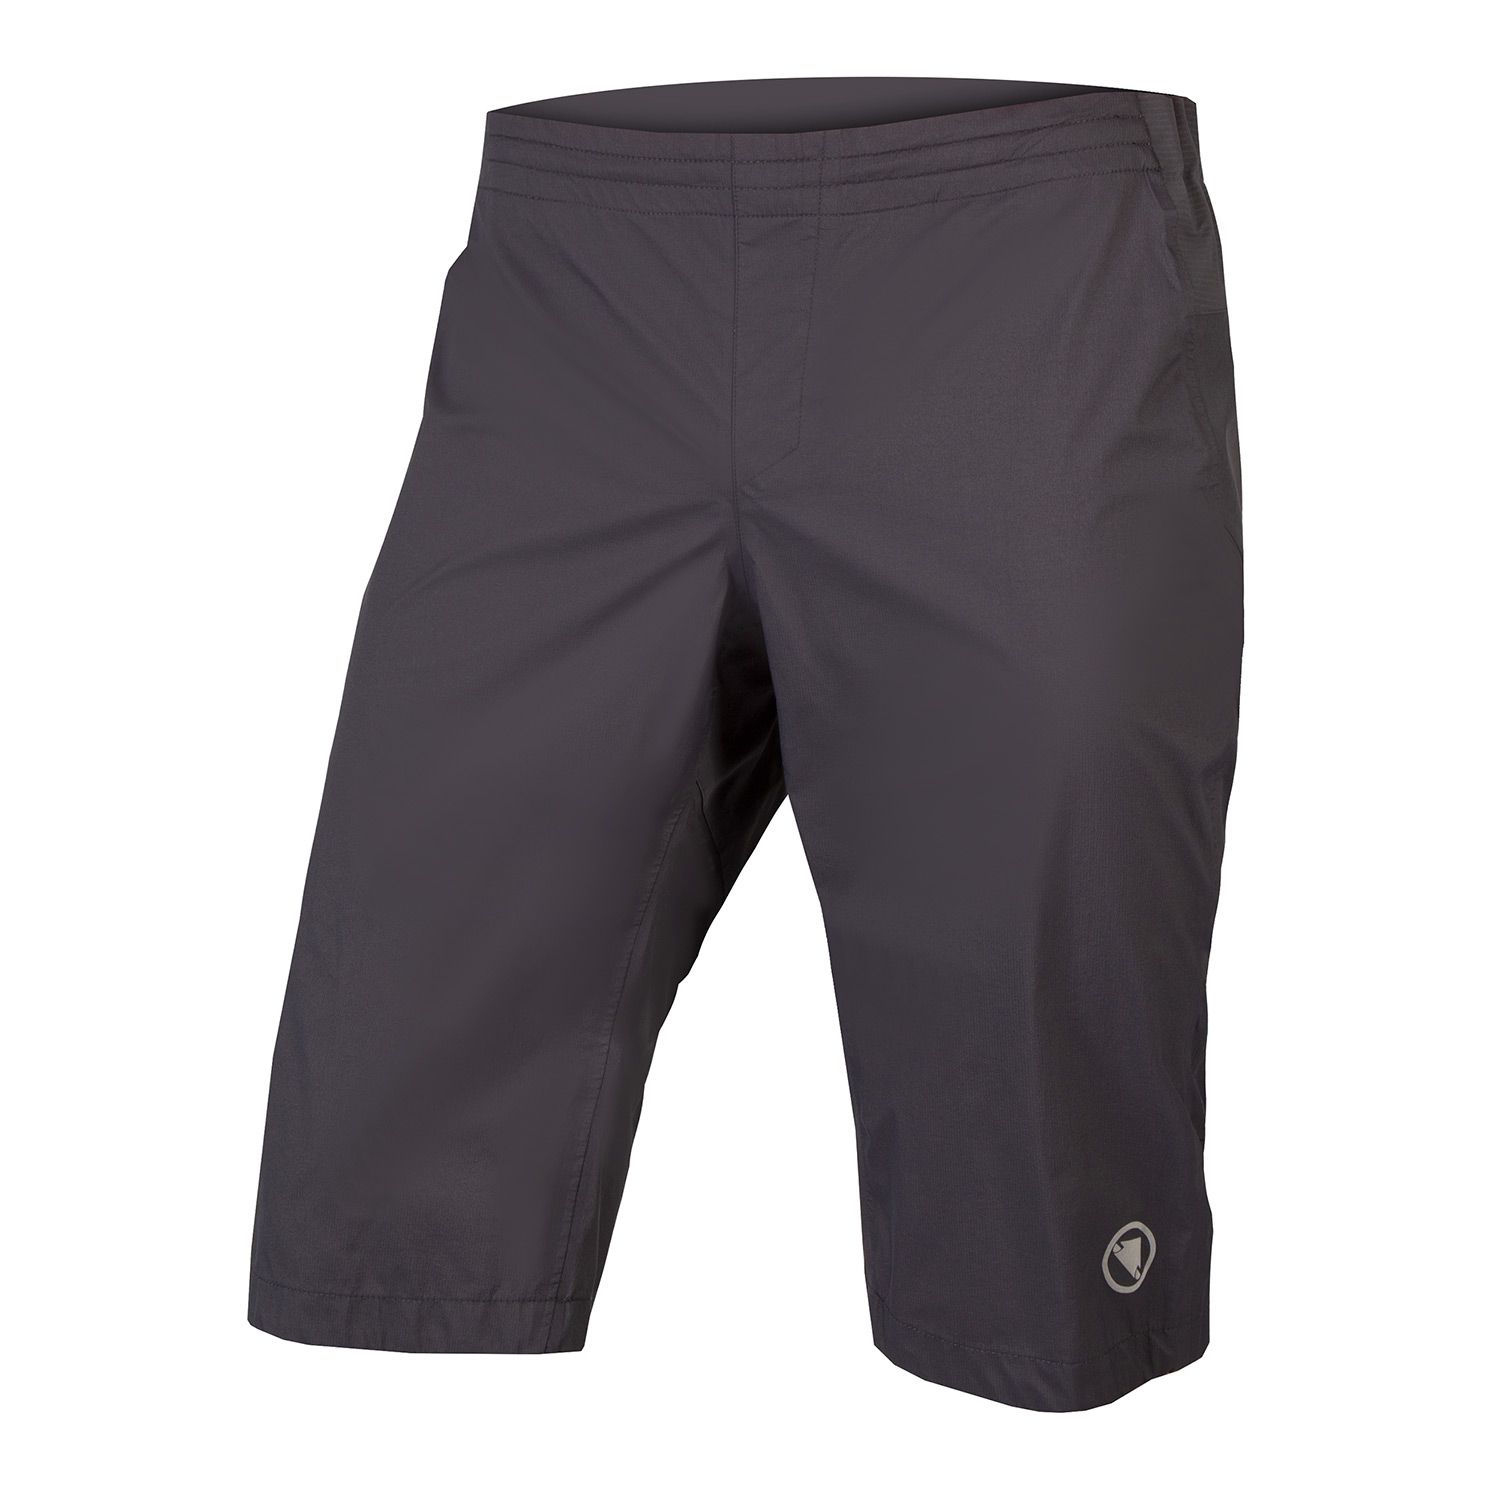 Endura Gv500 Waterproof Shorts - £75.59 | Shorts, Tights and Trousers ...